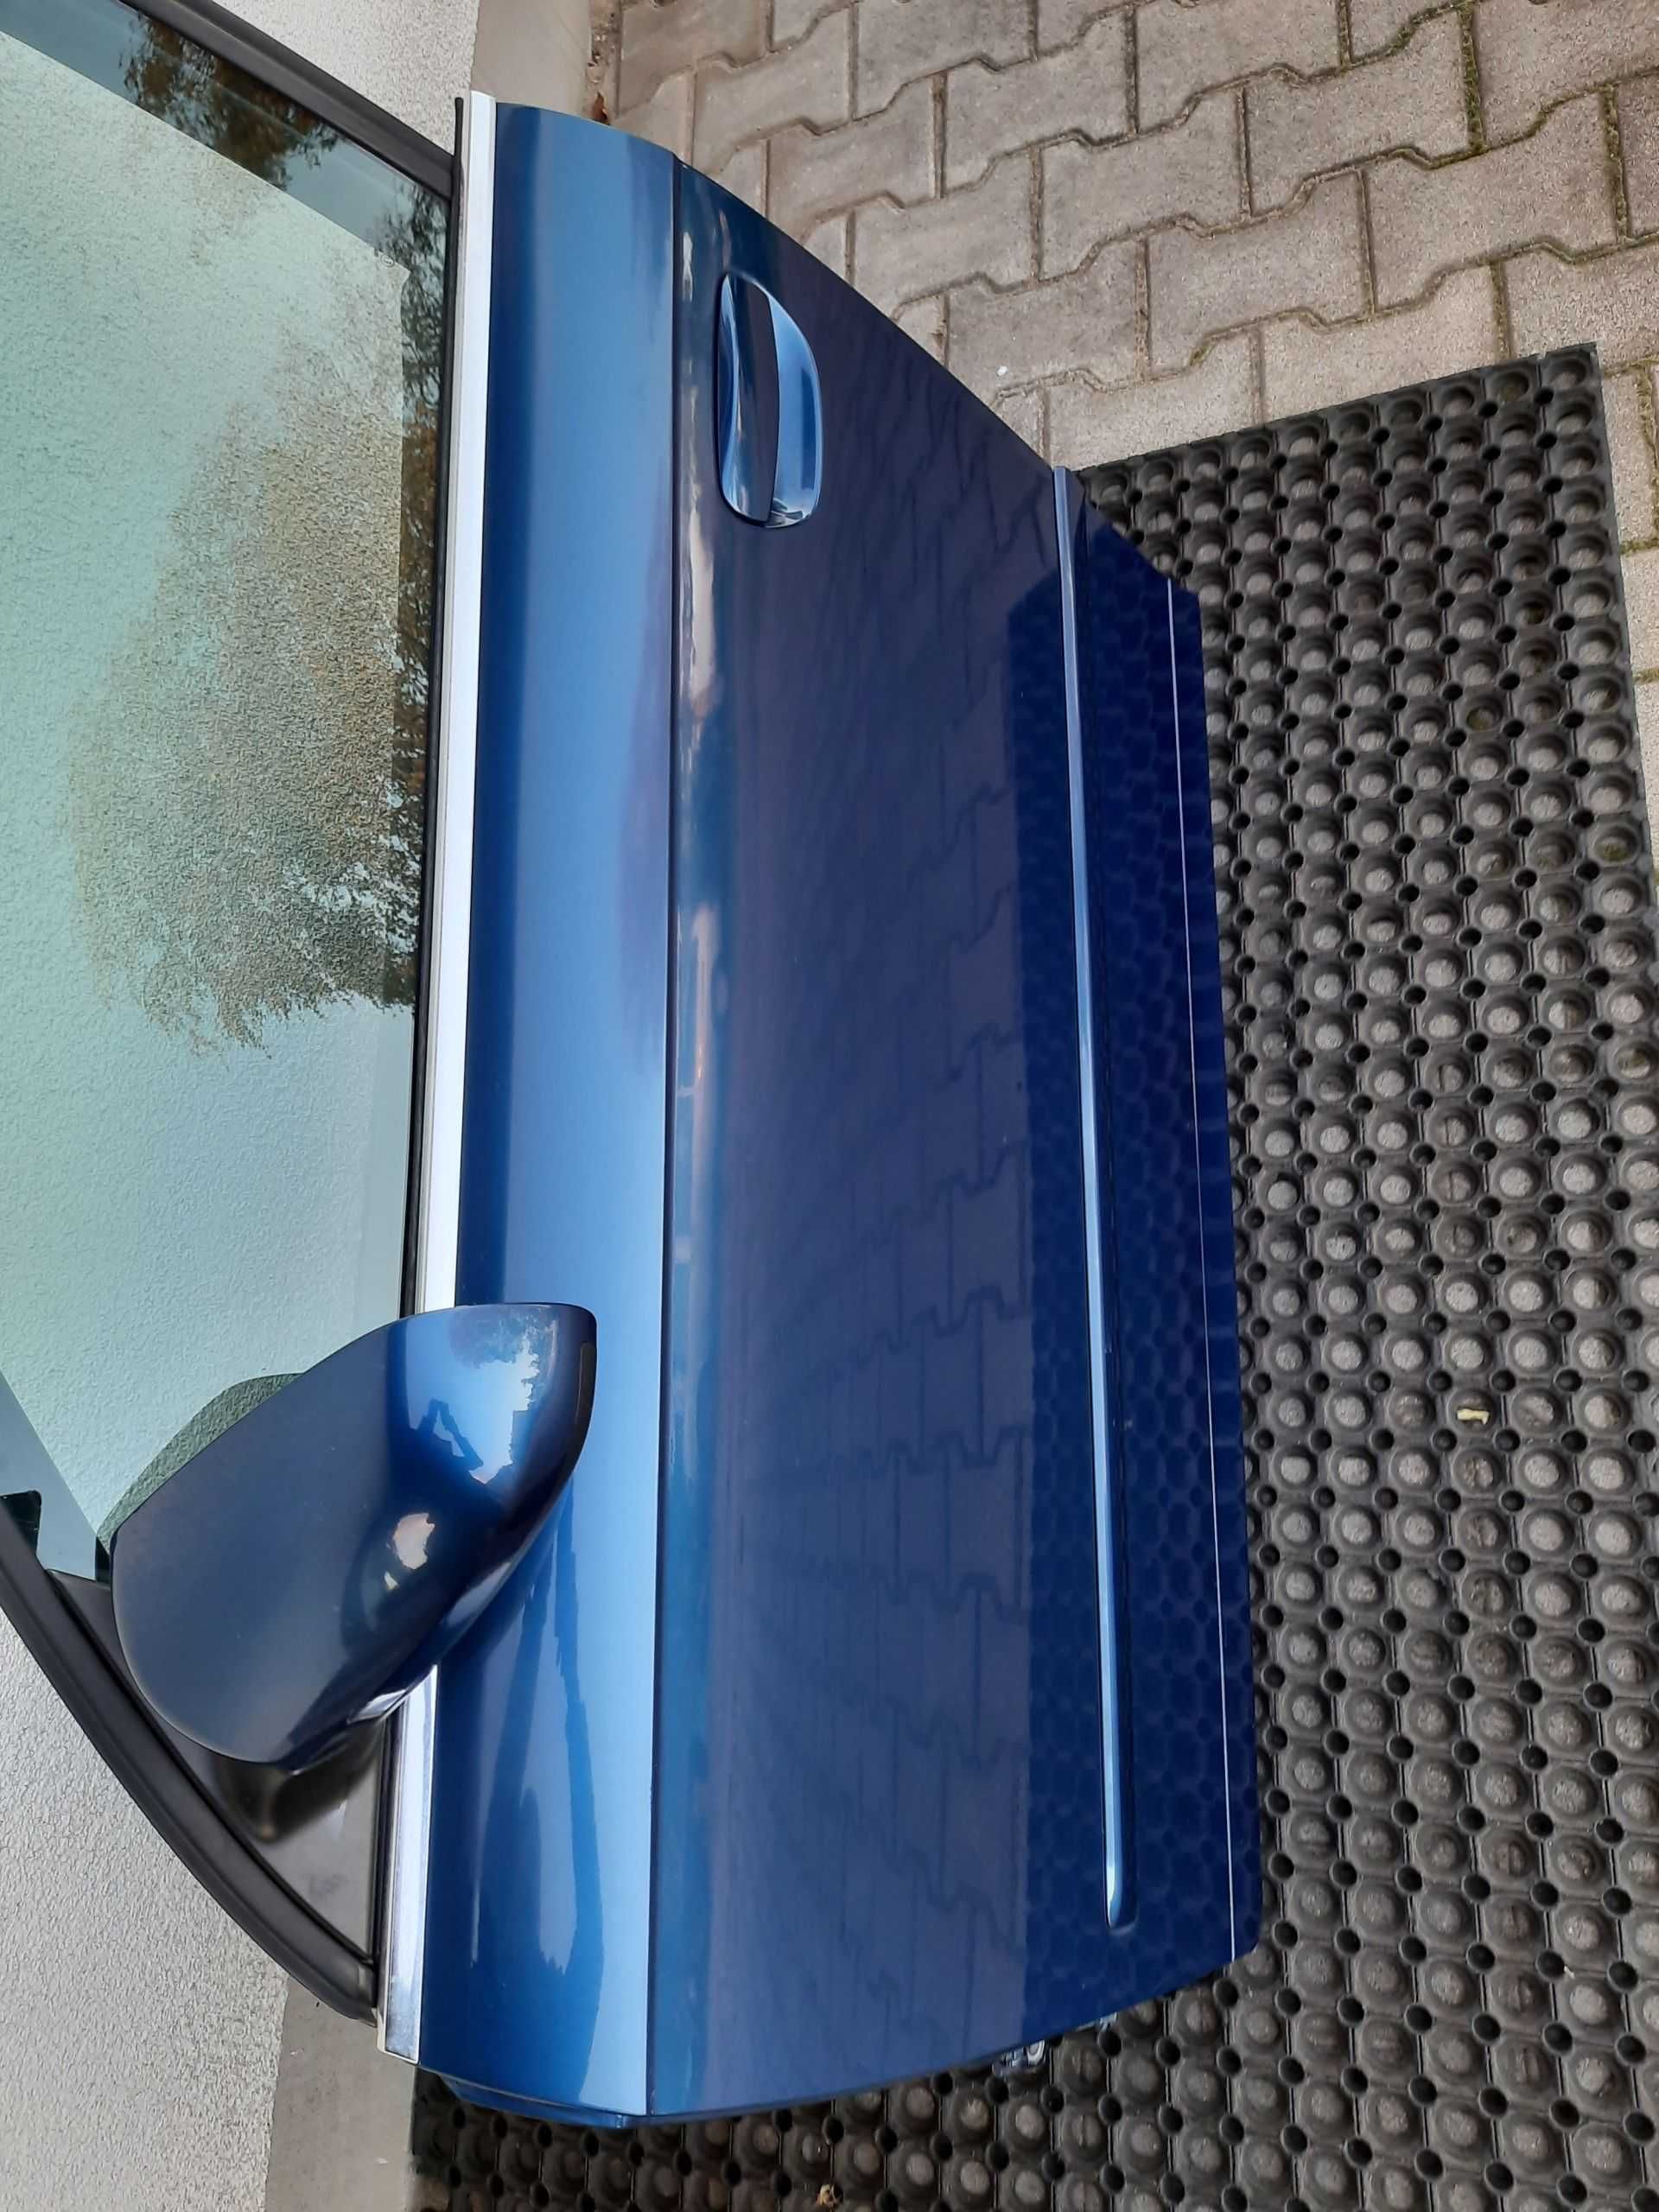 Drzwi przód przednie tylne lewe prawe Audi A4 B7 LZ5C